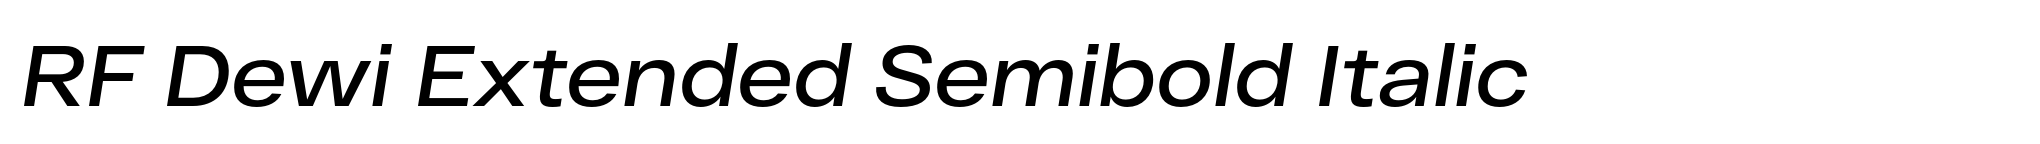 RF Dewi Extended Semibold Italic image